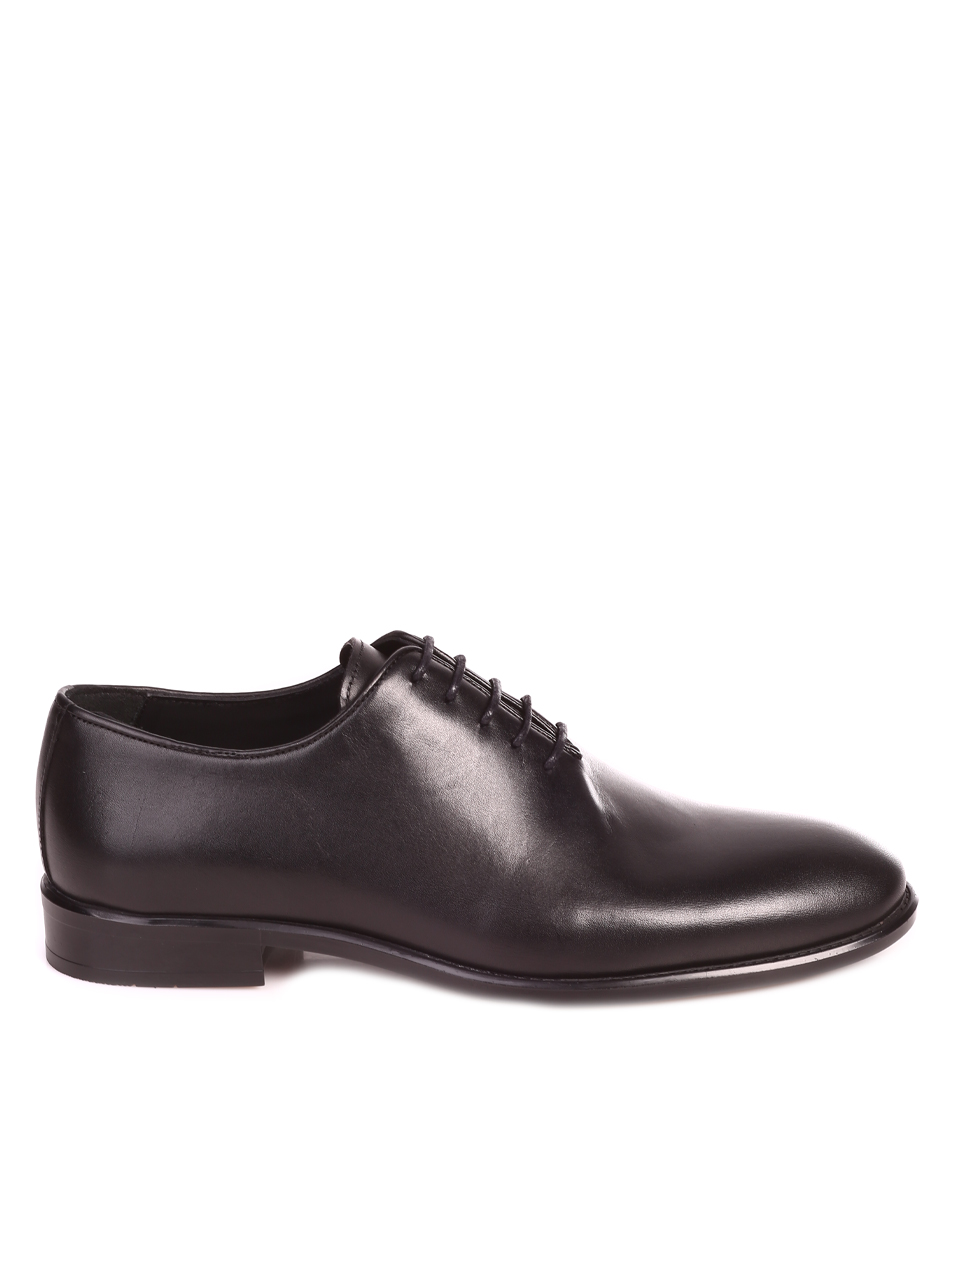 Елегантни мъжки обувки от естествена кожа в черно 153-5825 black S-2